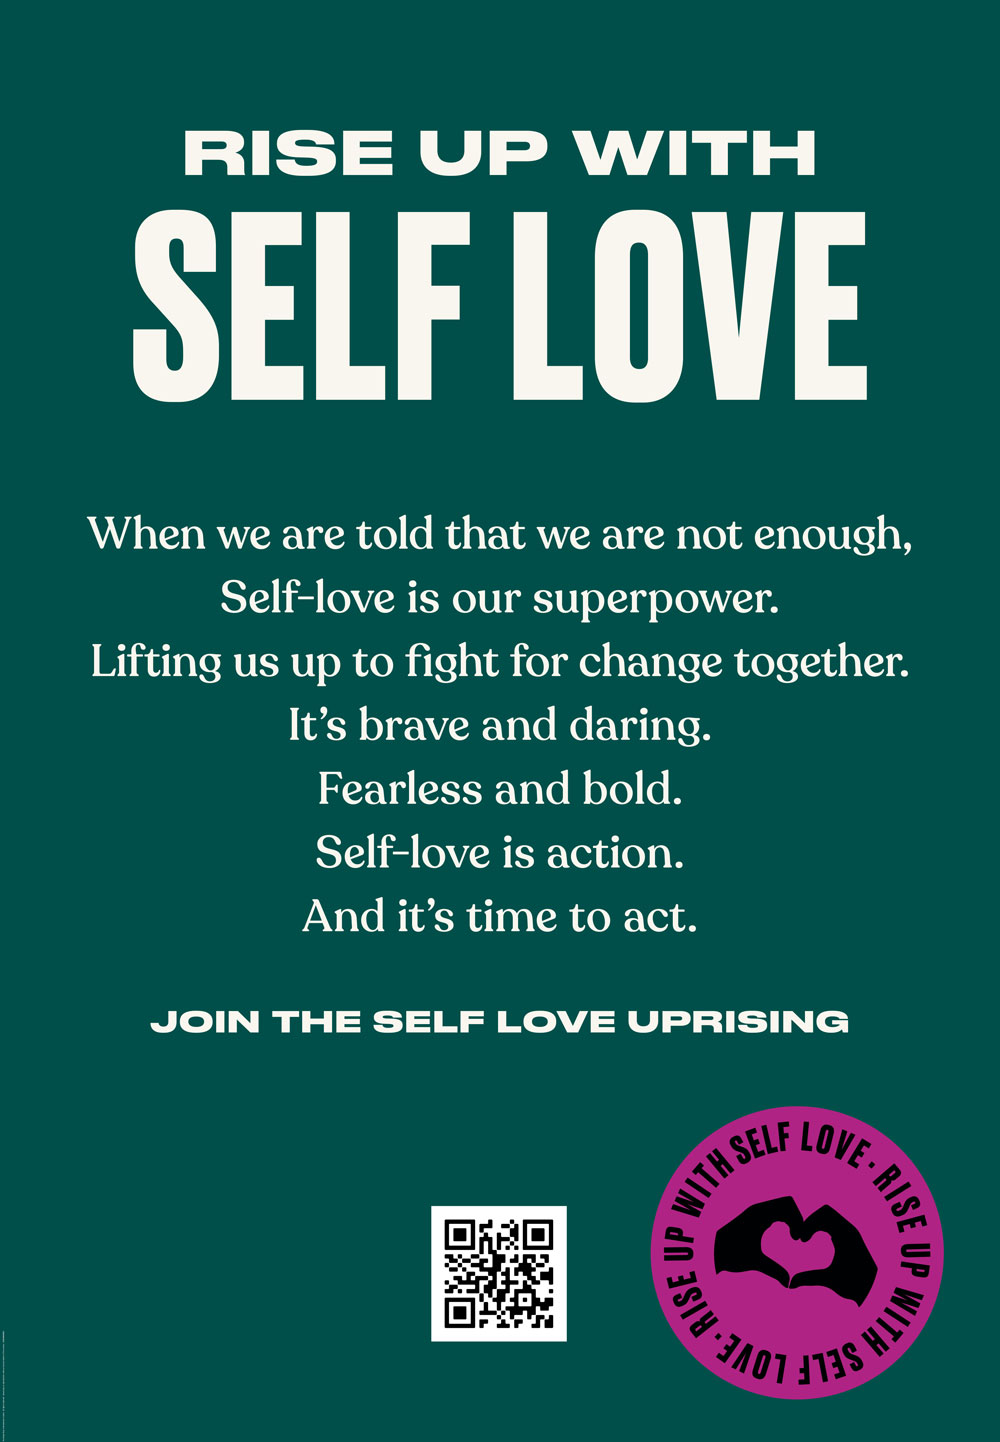 Mit der Self Love Uprising Bewegung setzt sich The Body Shop für mehr Selbstliebe und damit auch für eine grundlegende Veränderung in der (Beauty-)Welt ein.